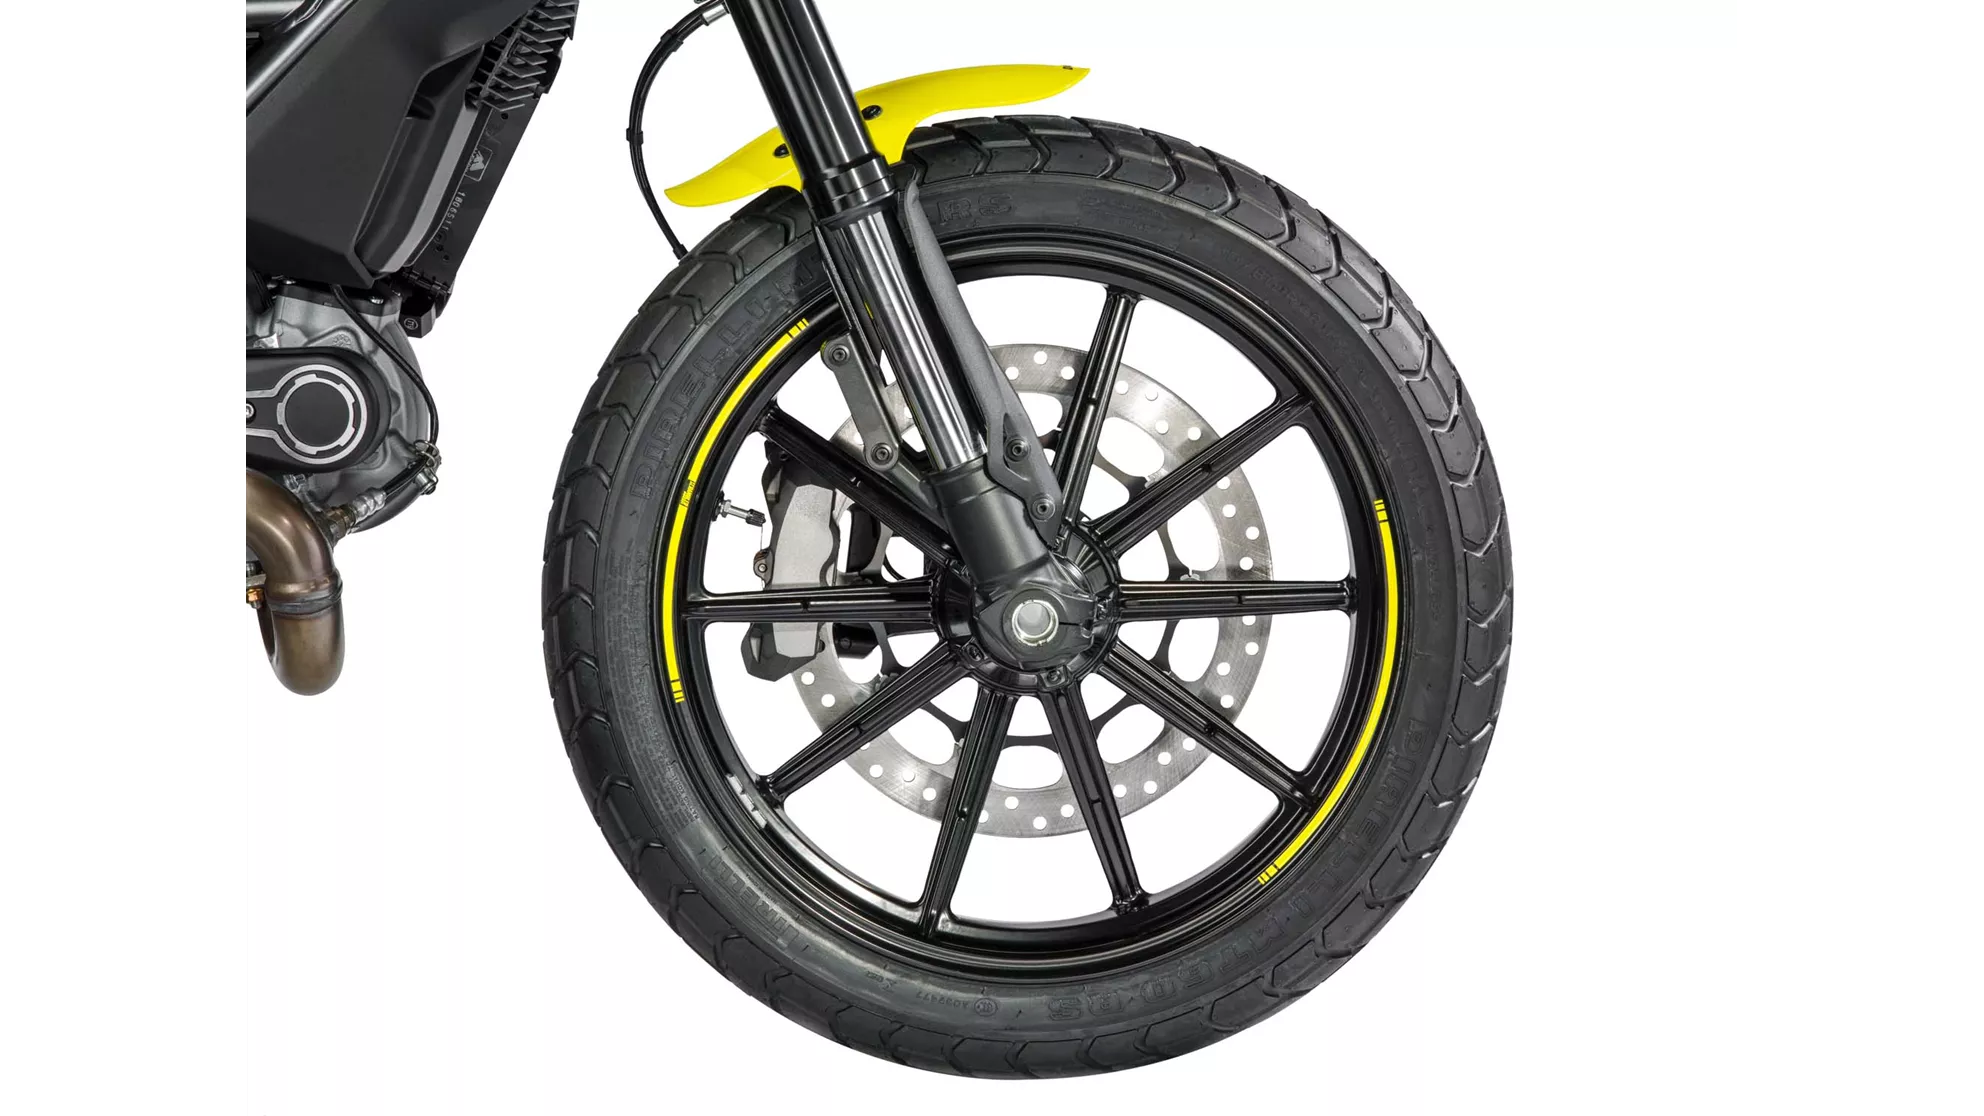 Ducati Scrambler Flat Track Pro - Immagine 8